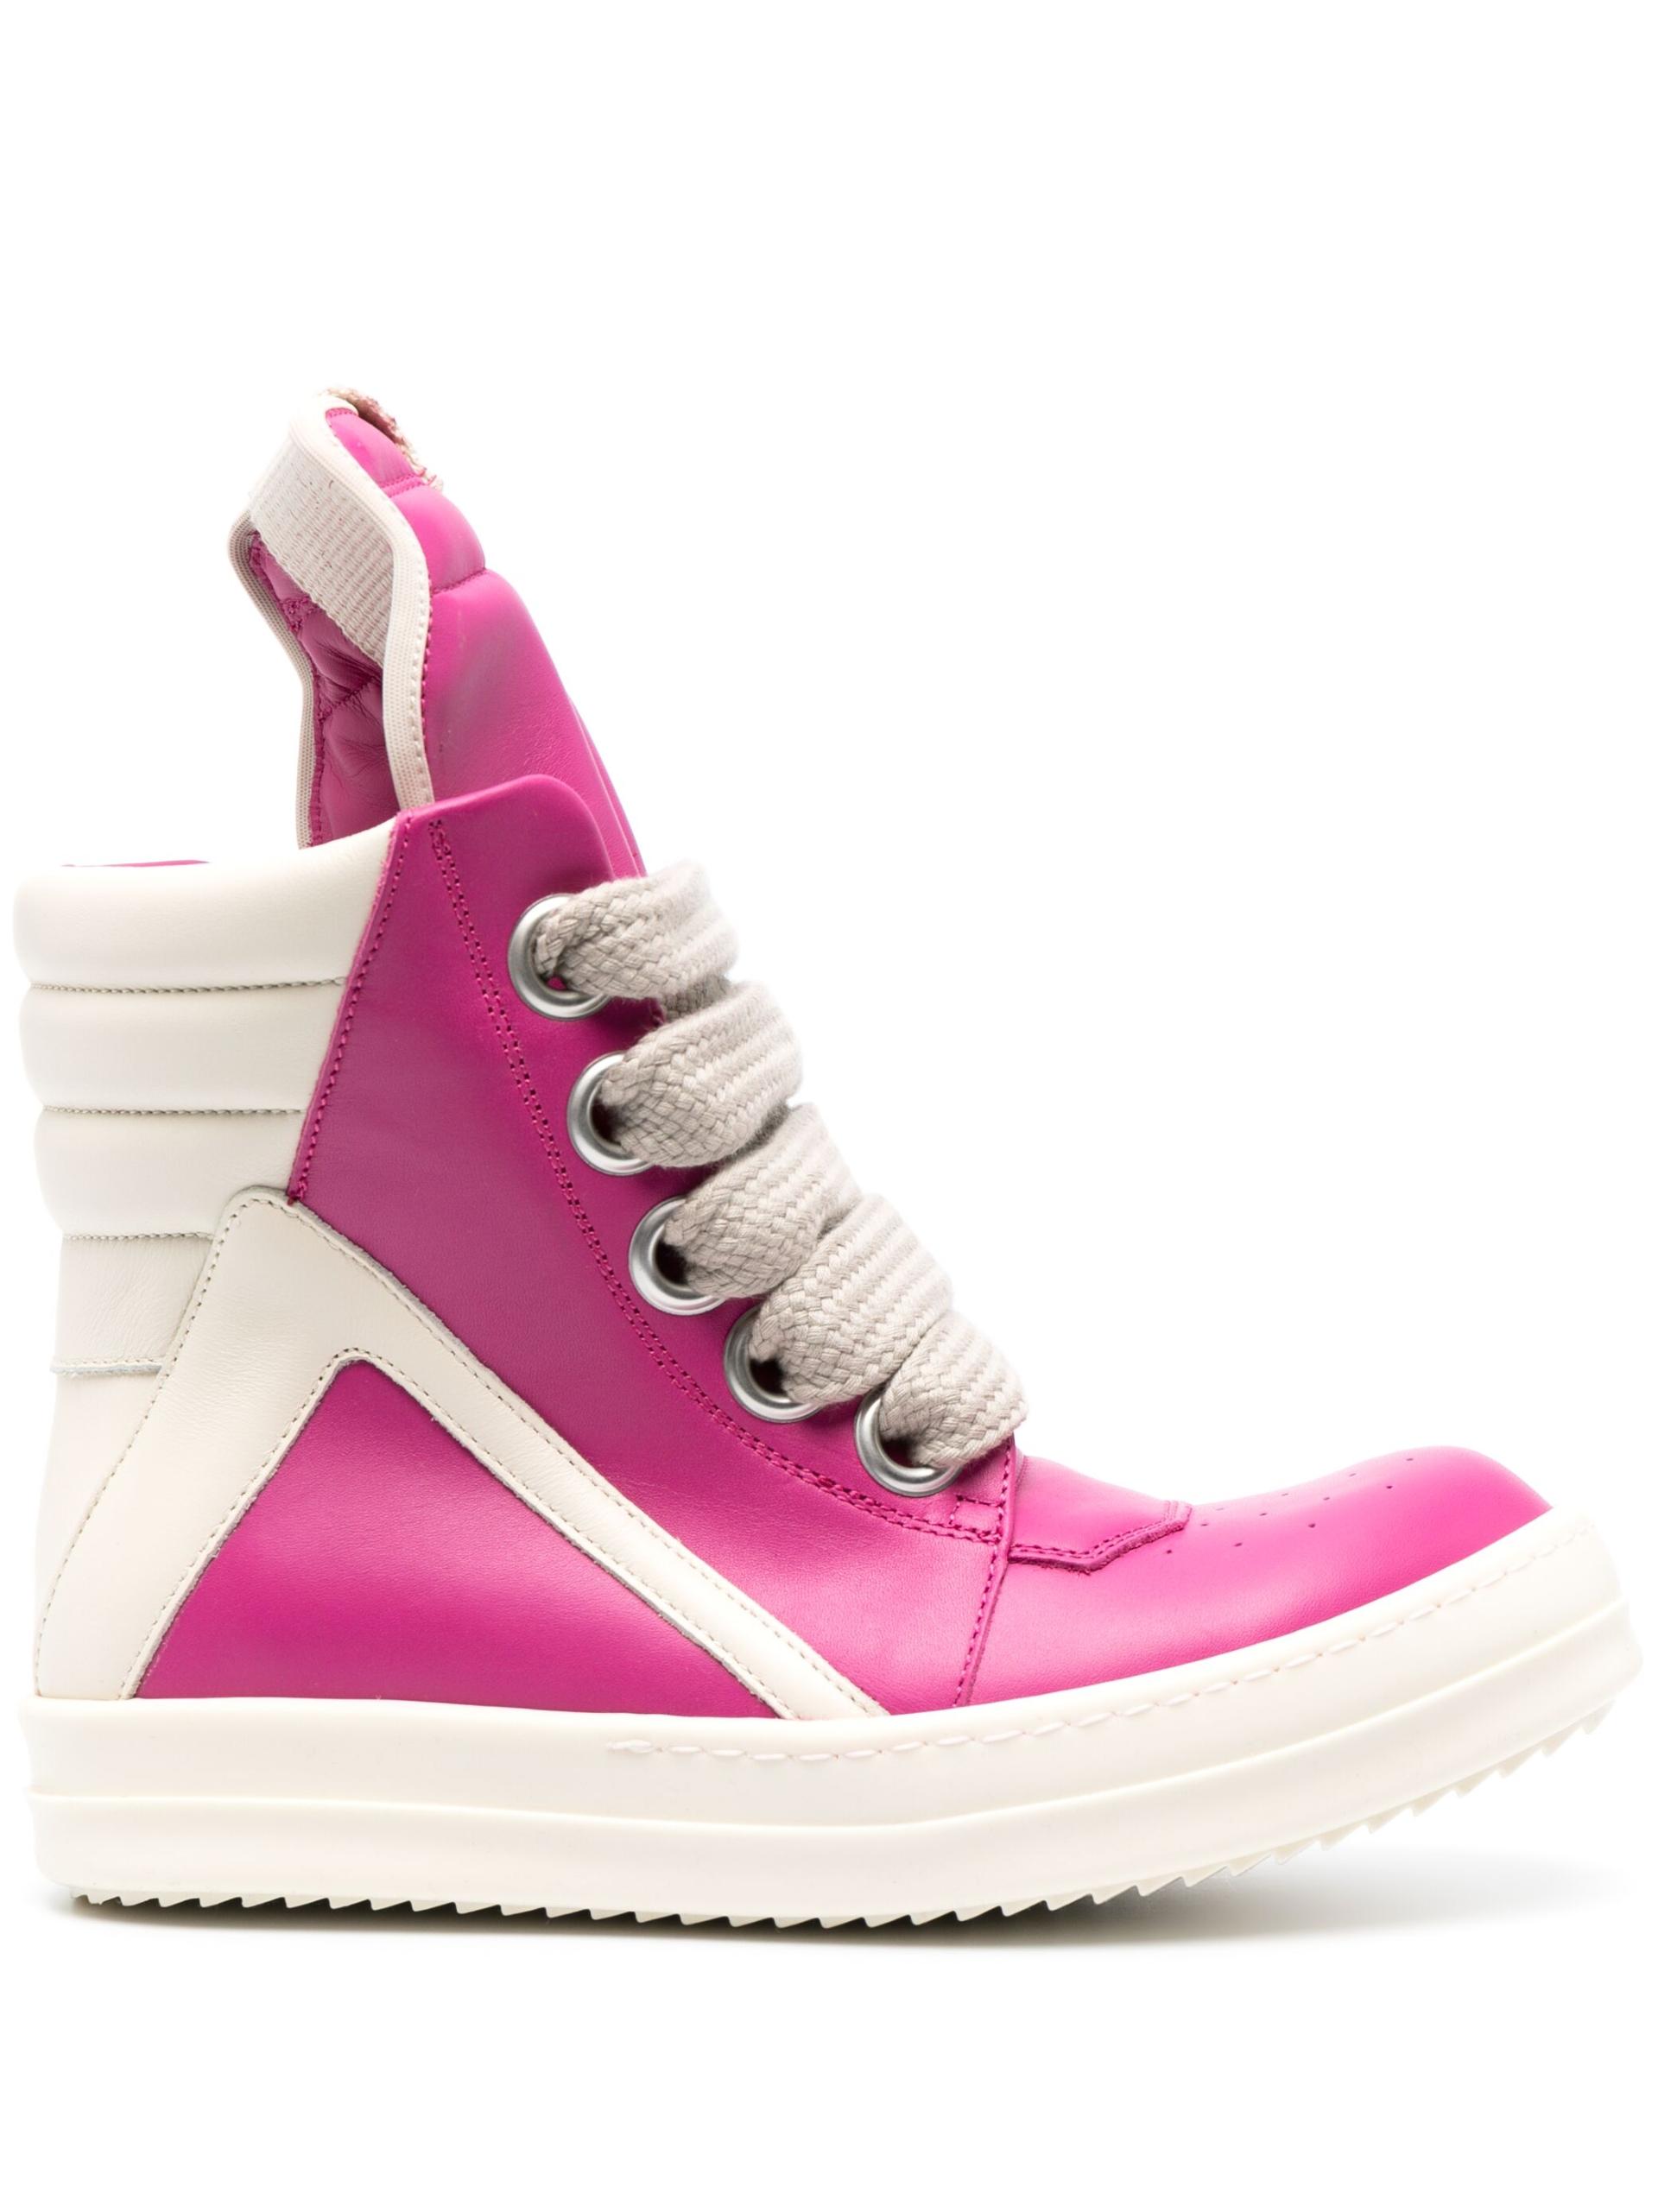 Rick Owens DRKSHDW Geobasket High-top Sneakers in Pink | Lyst